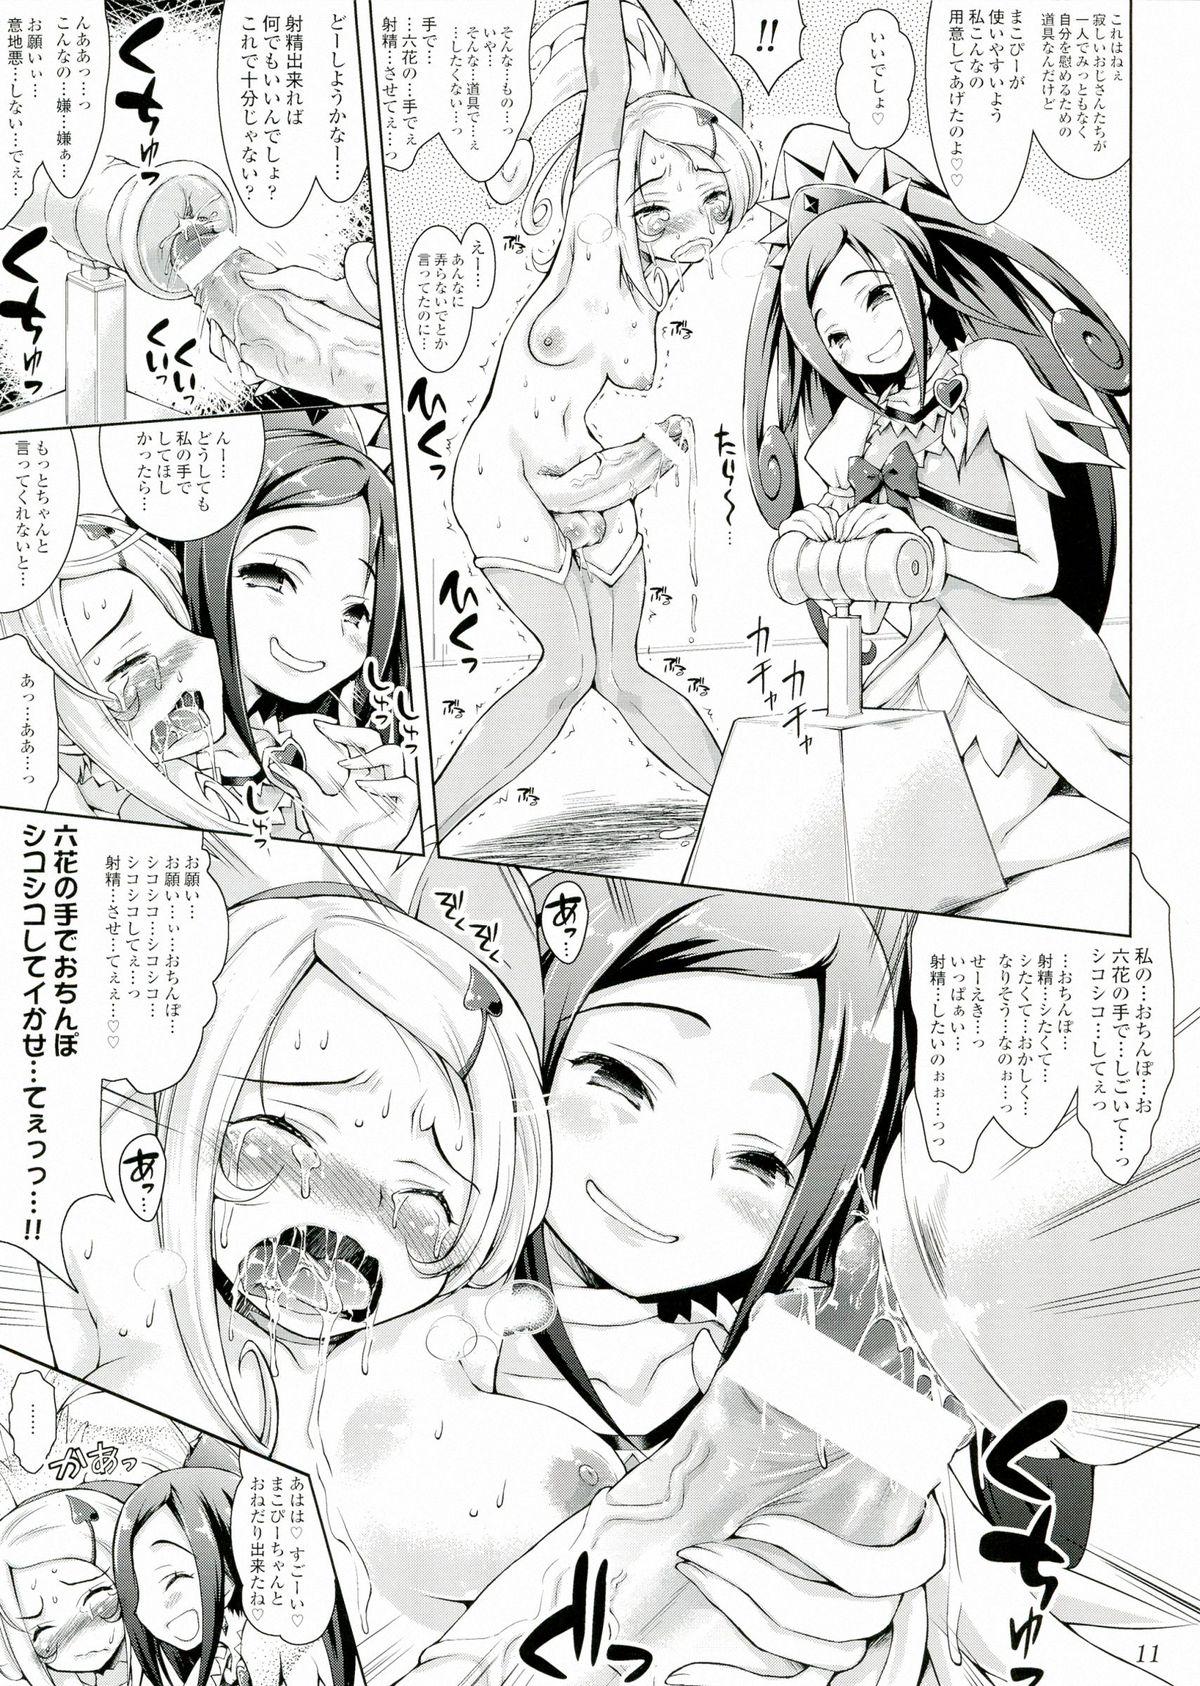 Rimming Makopi- ni Haeteta Chinpo wa Rikka ni Ijime rareru to Nando demo Shasei shichau no - Dokidoki precure Hard Core Porn - Page 11